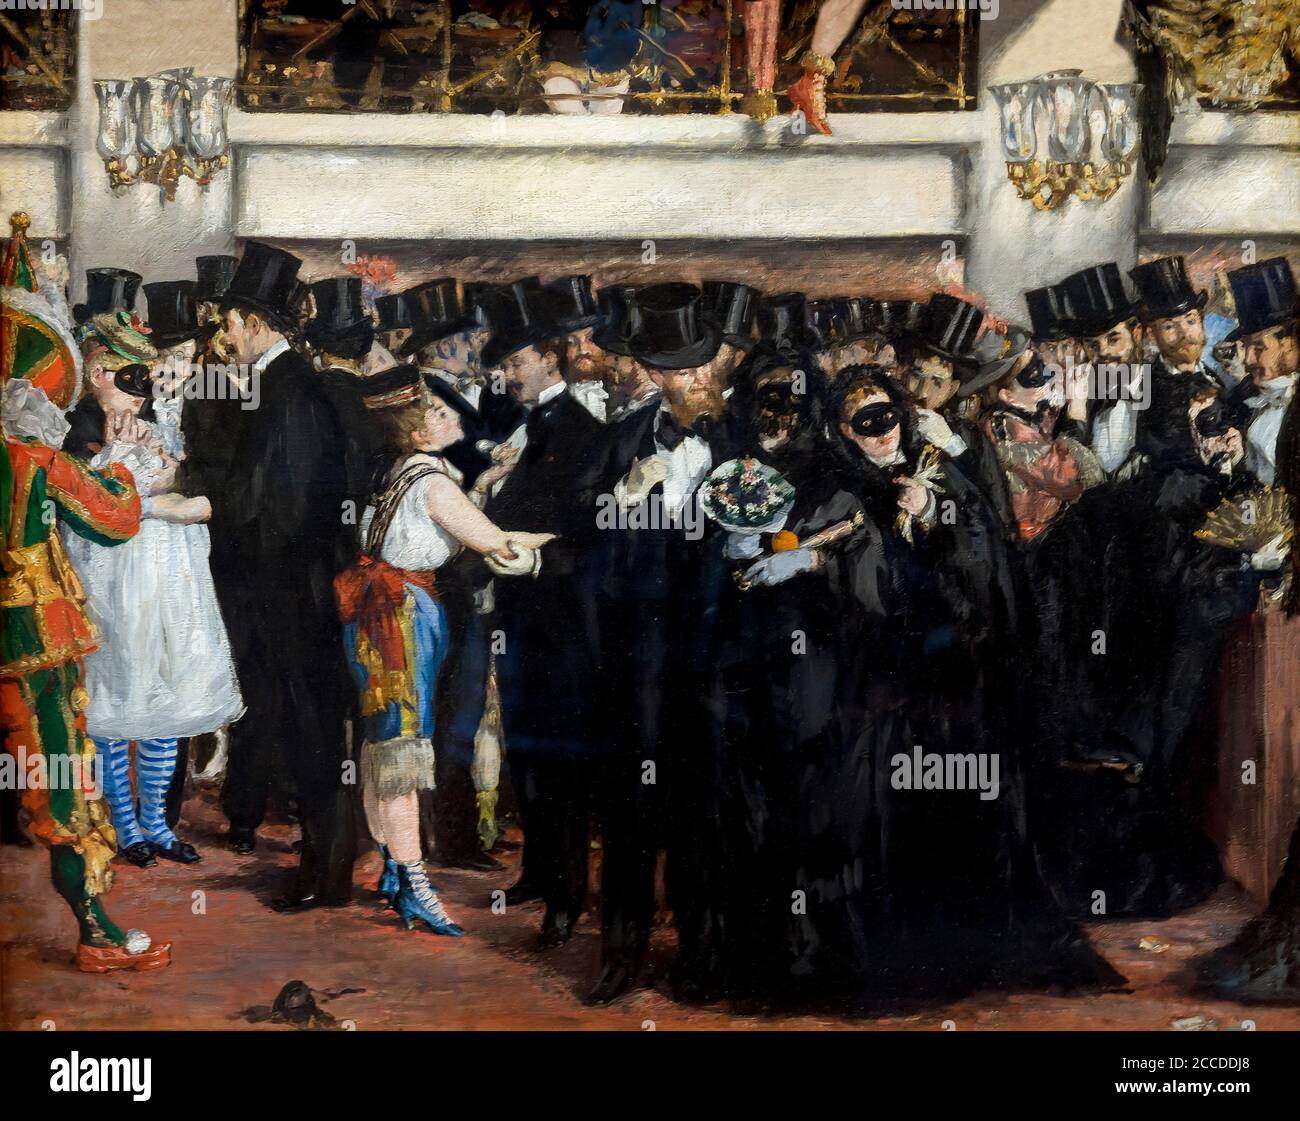 Bal masqué à l'Opéra, Edouard Manet, 1873, National Gallery of Art, Washington DC, USA, Amérique du Nord Banque D'Images